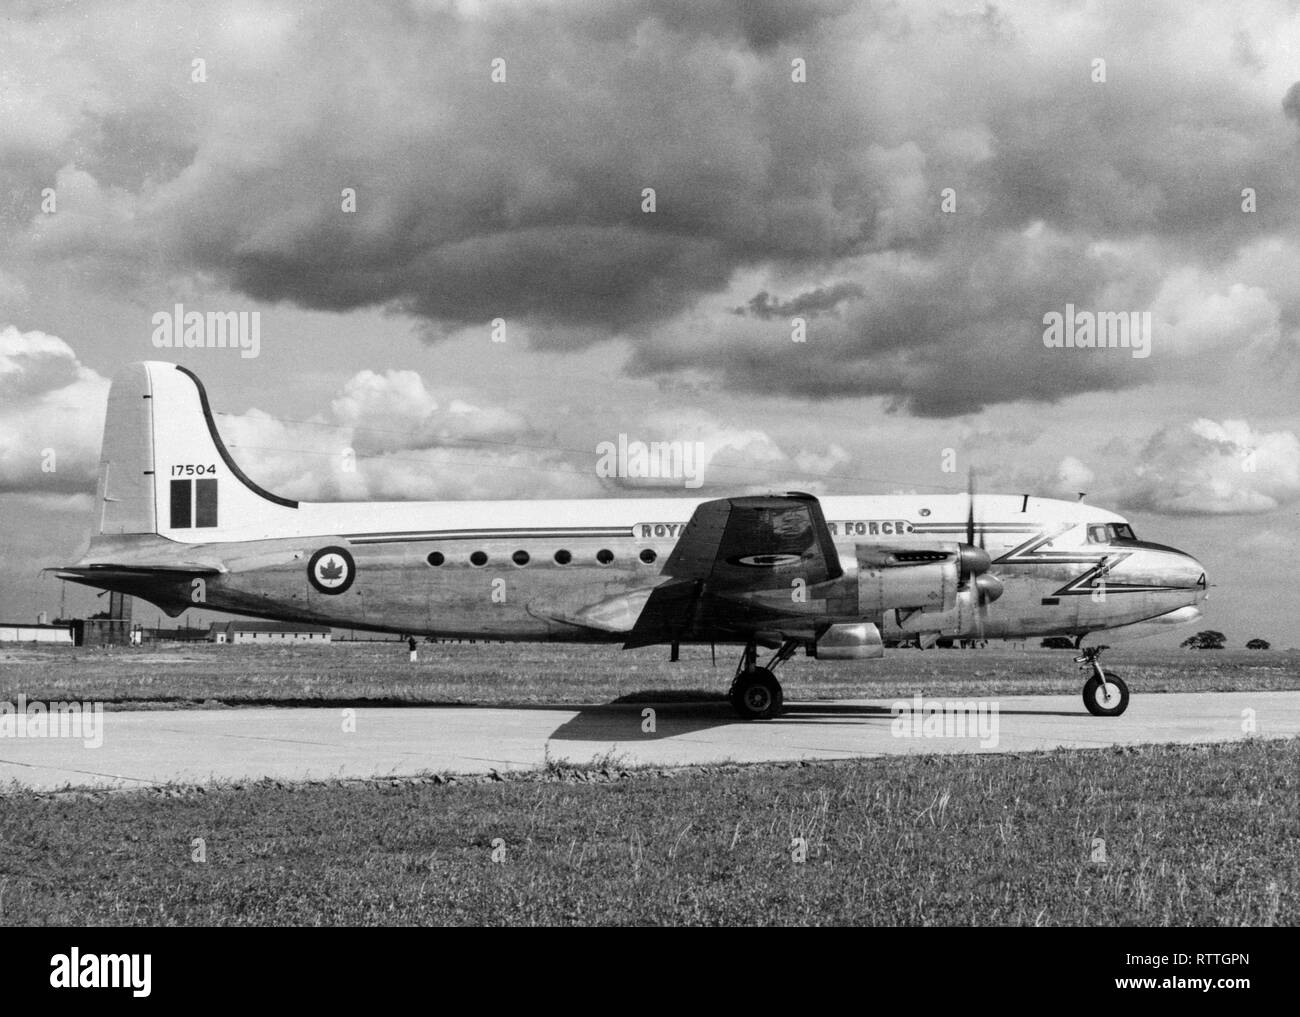 Royal Canadian Air Force, RCAF, Canadair CL-4 North Star Transportflugzeuge, Seriennummer 17504. Die CL-4 war eine Weiterentwicklung der Douglas DC-4. Dieses Flugzeug wurde 1960 verschrottet. Stockfoto